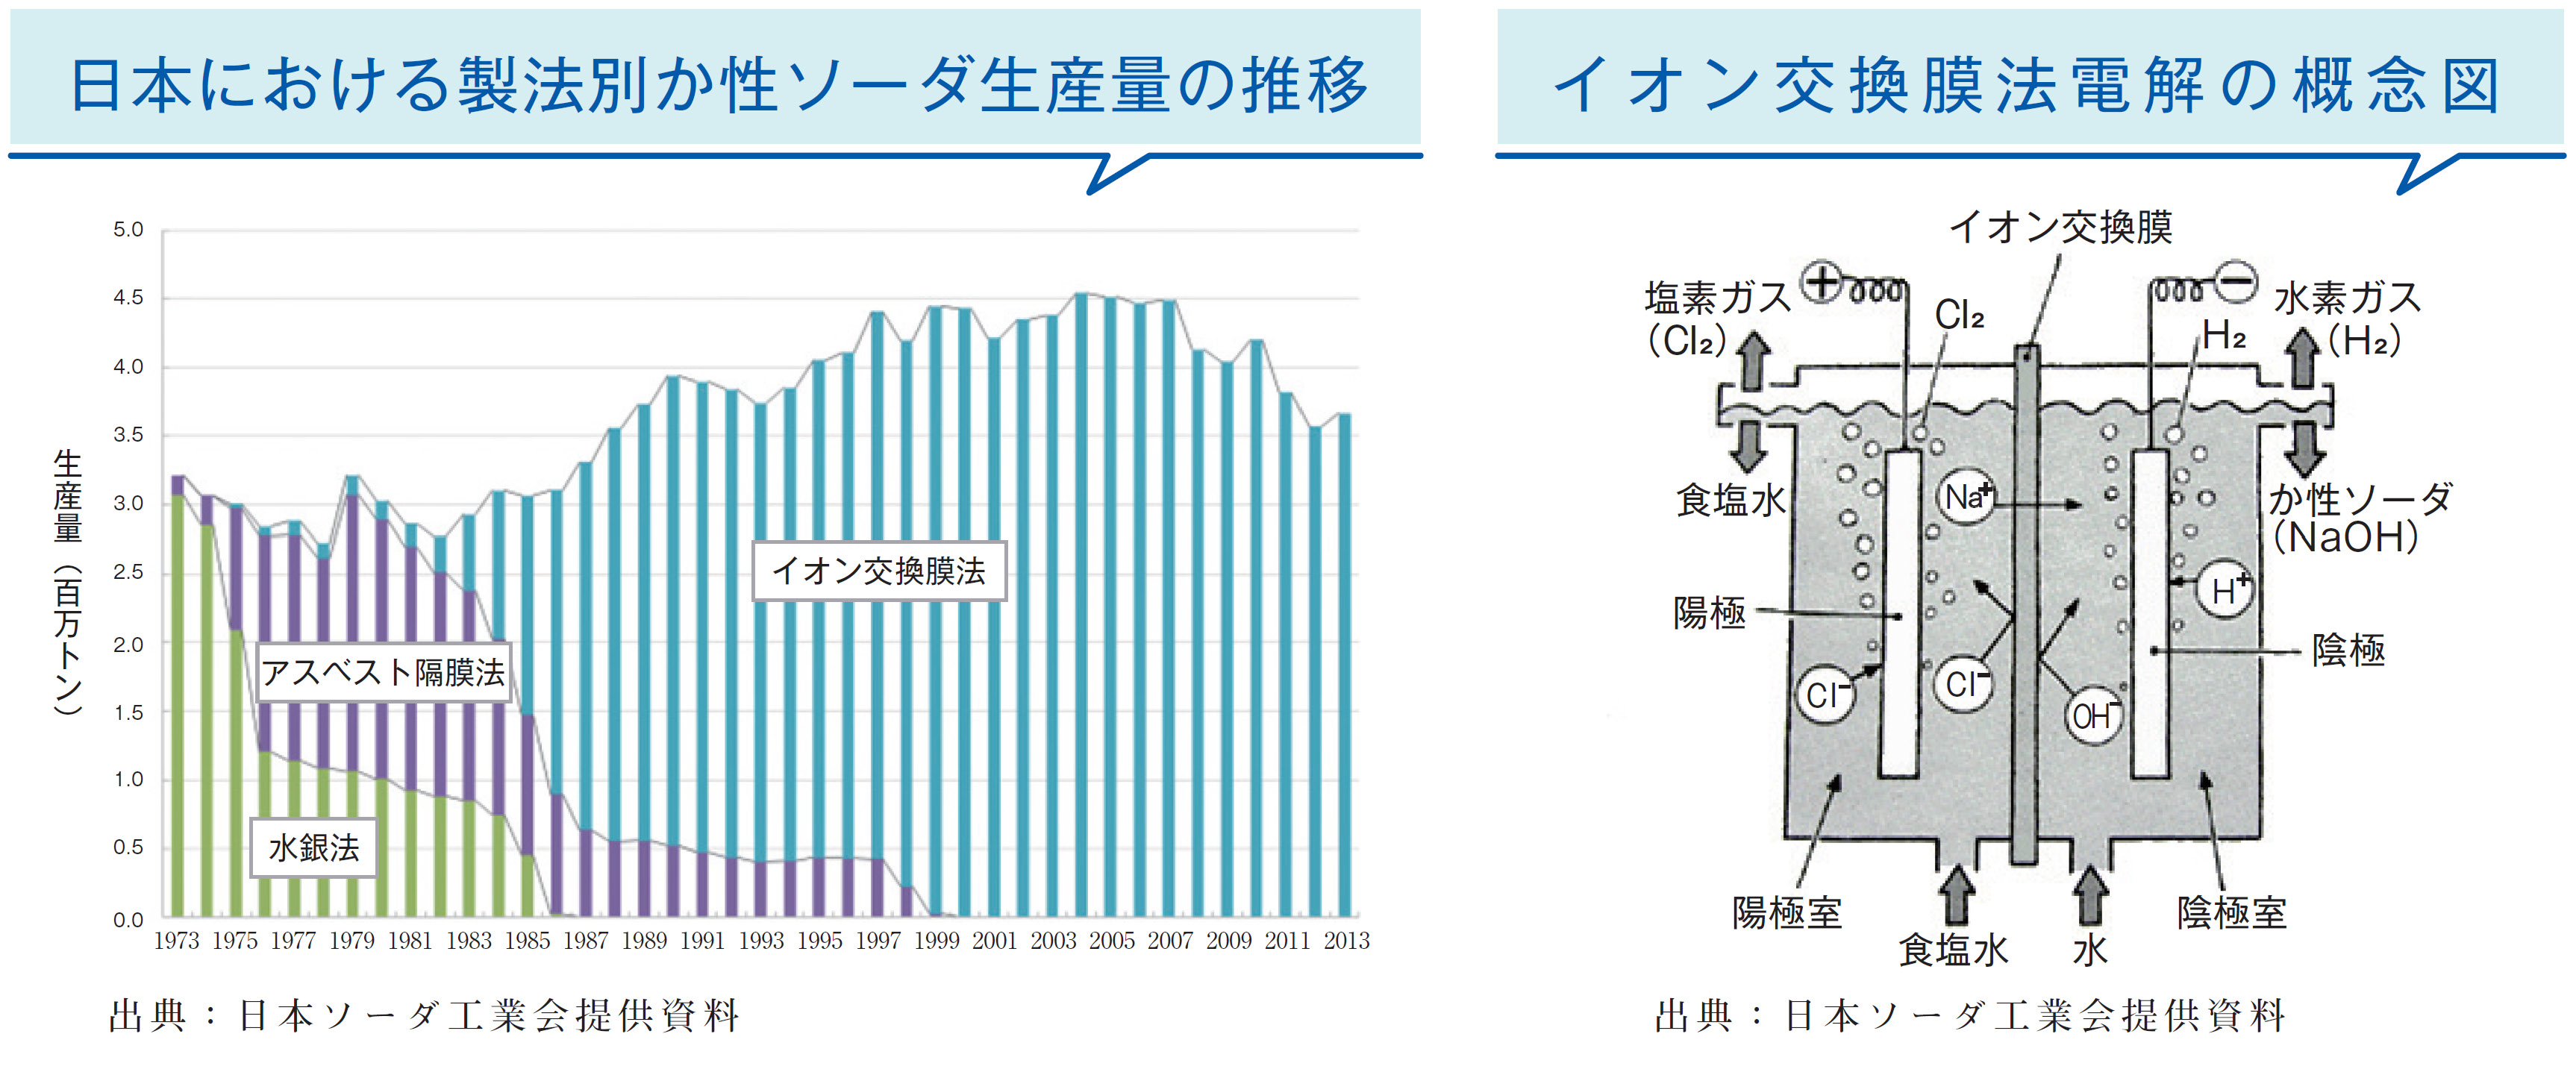 日本における製法別か性ソーダ生産量の推移、イオン交換膜法電解の概念図